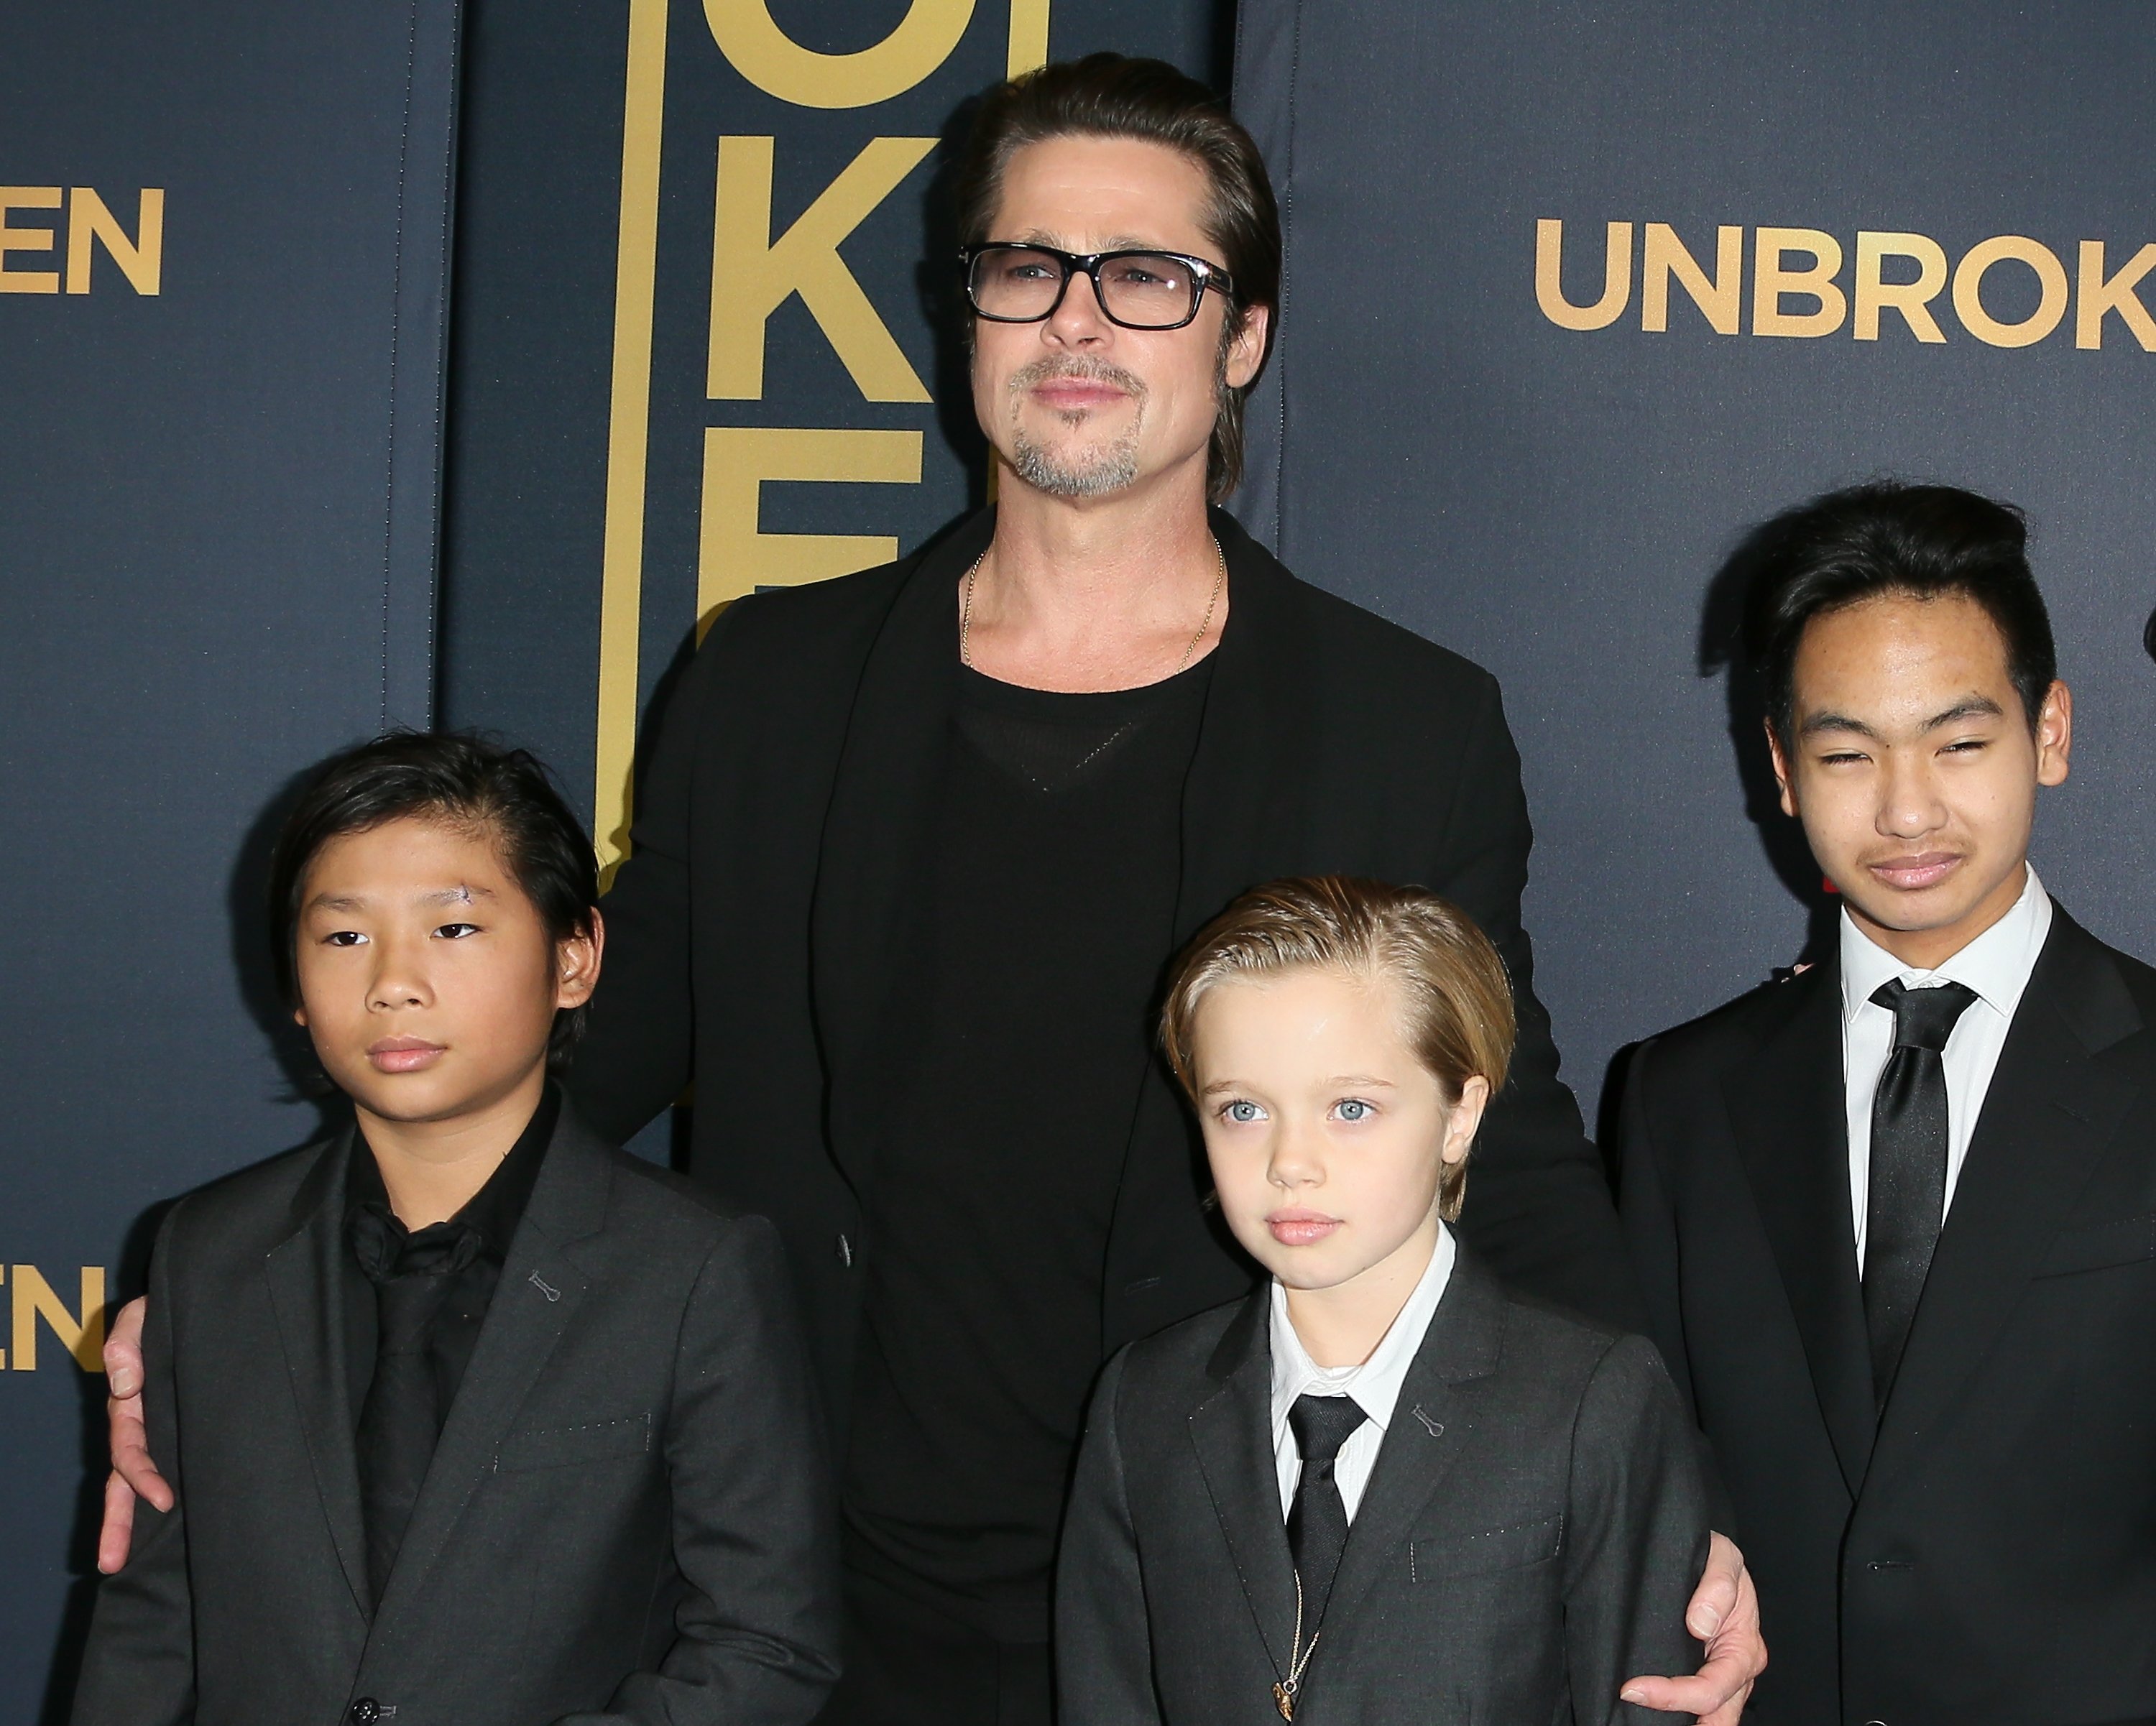 Brad Pitt, Pax Thien Jolie-Pitt, Shiloh Nouvel Jolie-Pitt, et Maddox Jolie-Pitt lors de la première de "Unbroken" à Los Angeles au TCL Chinese Theatre IMAX le 15 décembre 2014, à Hollywood, en Californie. | Source : Getty Images